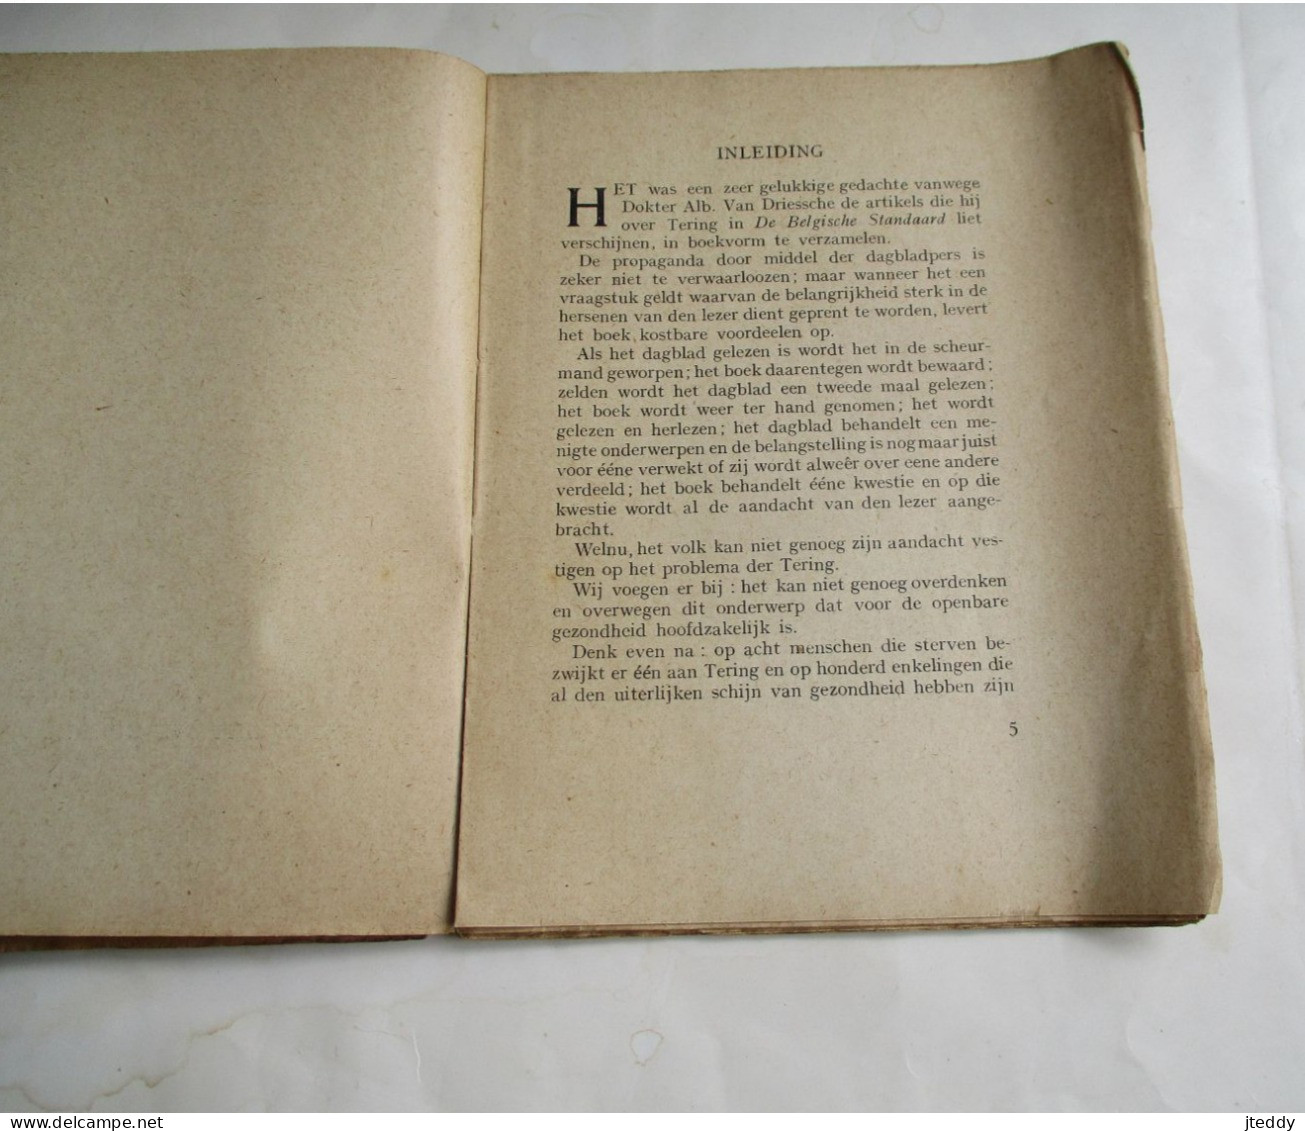 ANTIEK OUD Boekje  Eenige Losse  Gedachten   OVER  DE  TERING   Door D . A .   VANDRIESSCHE    1920 - Antique